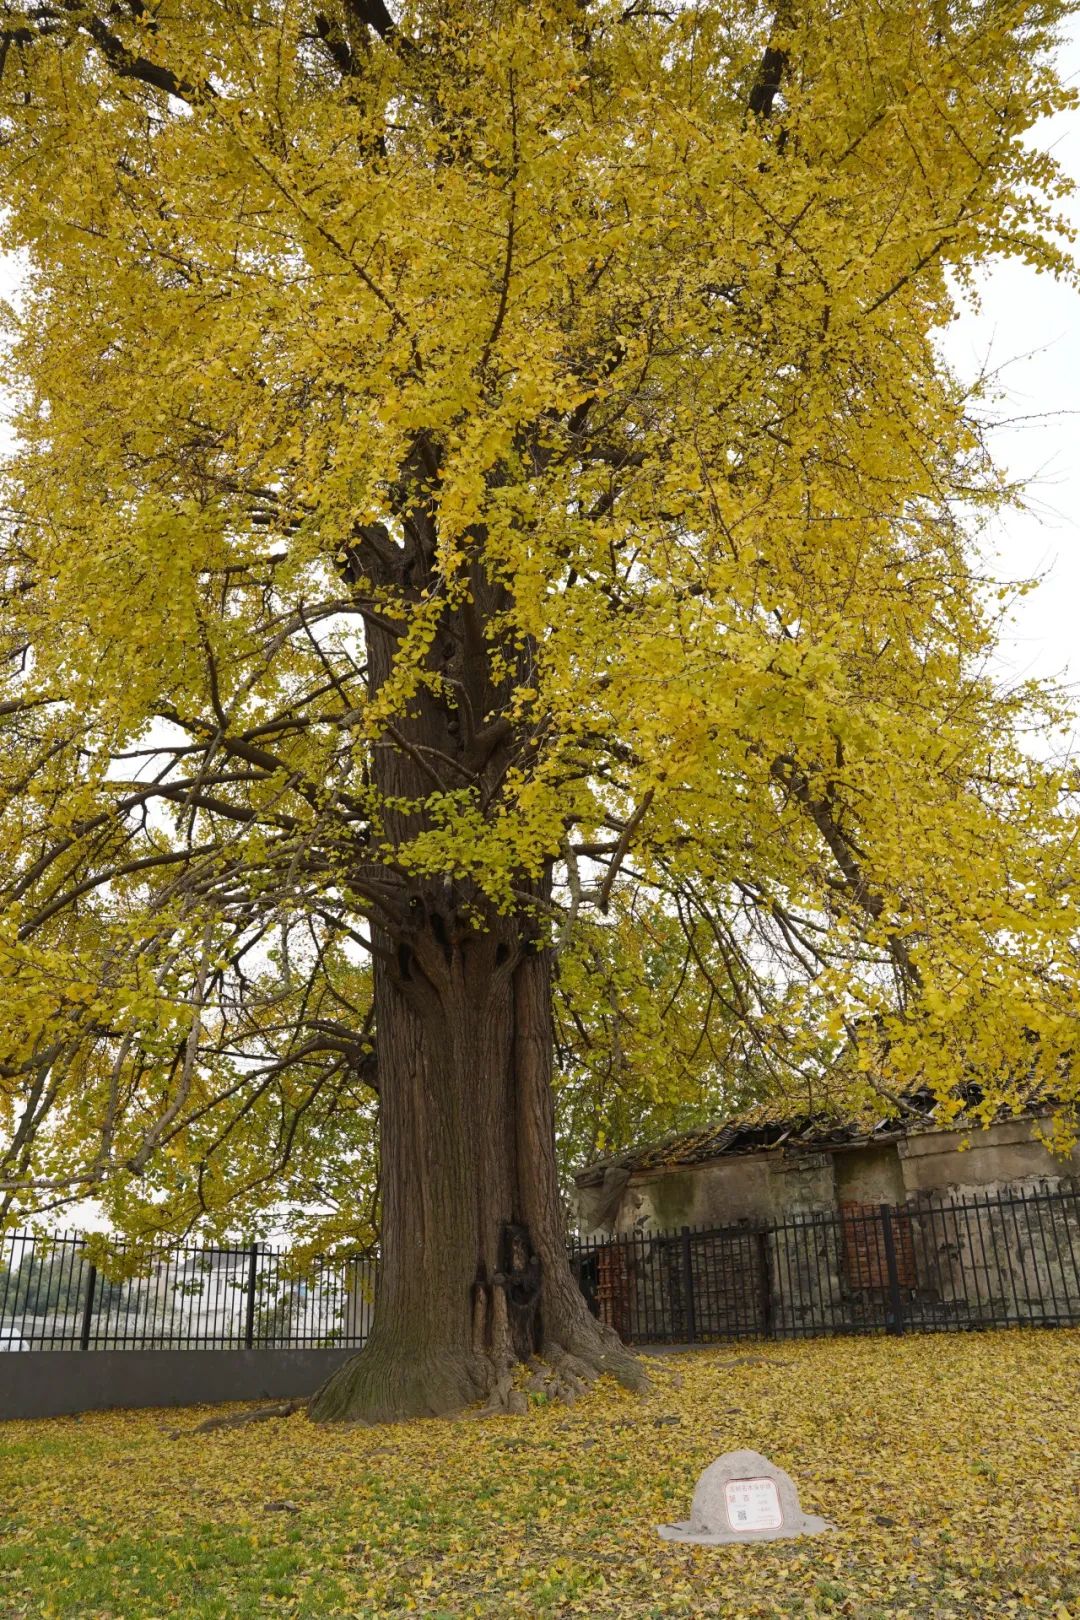 青浦共有百年以上的古银杏树41棵,而白鹤拥有14棵,占三分之一,虽然